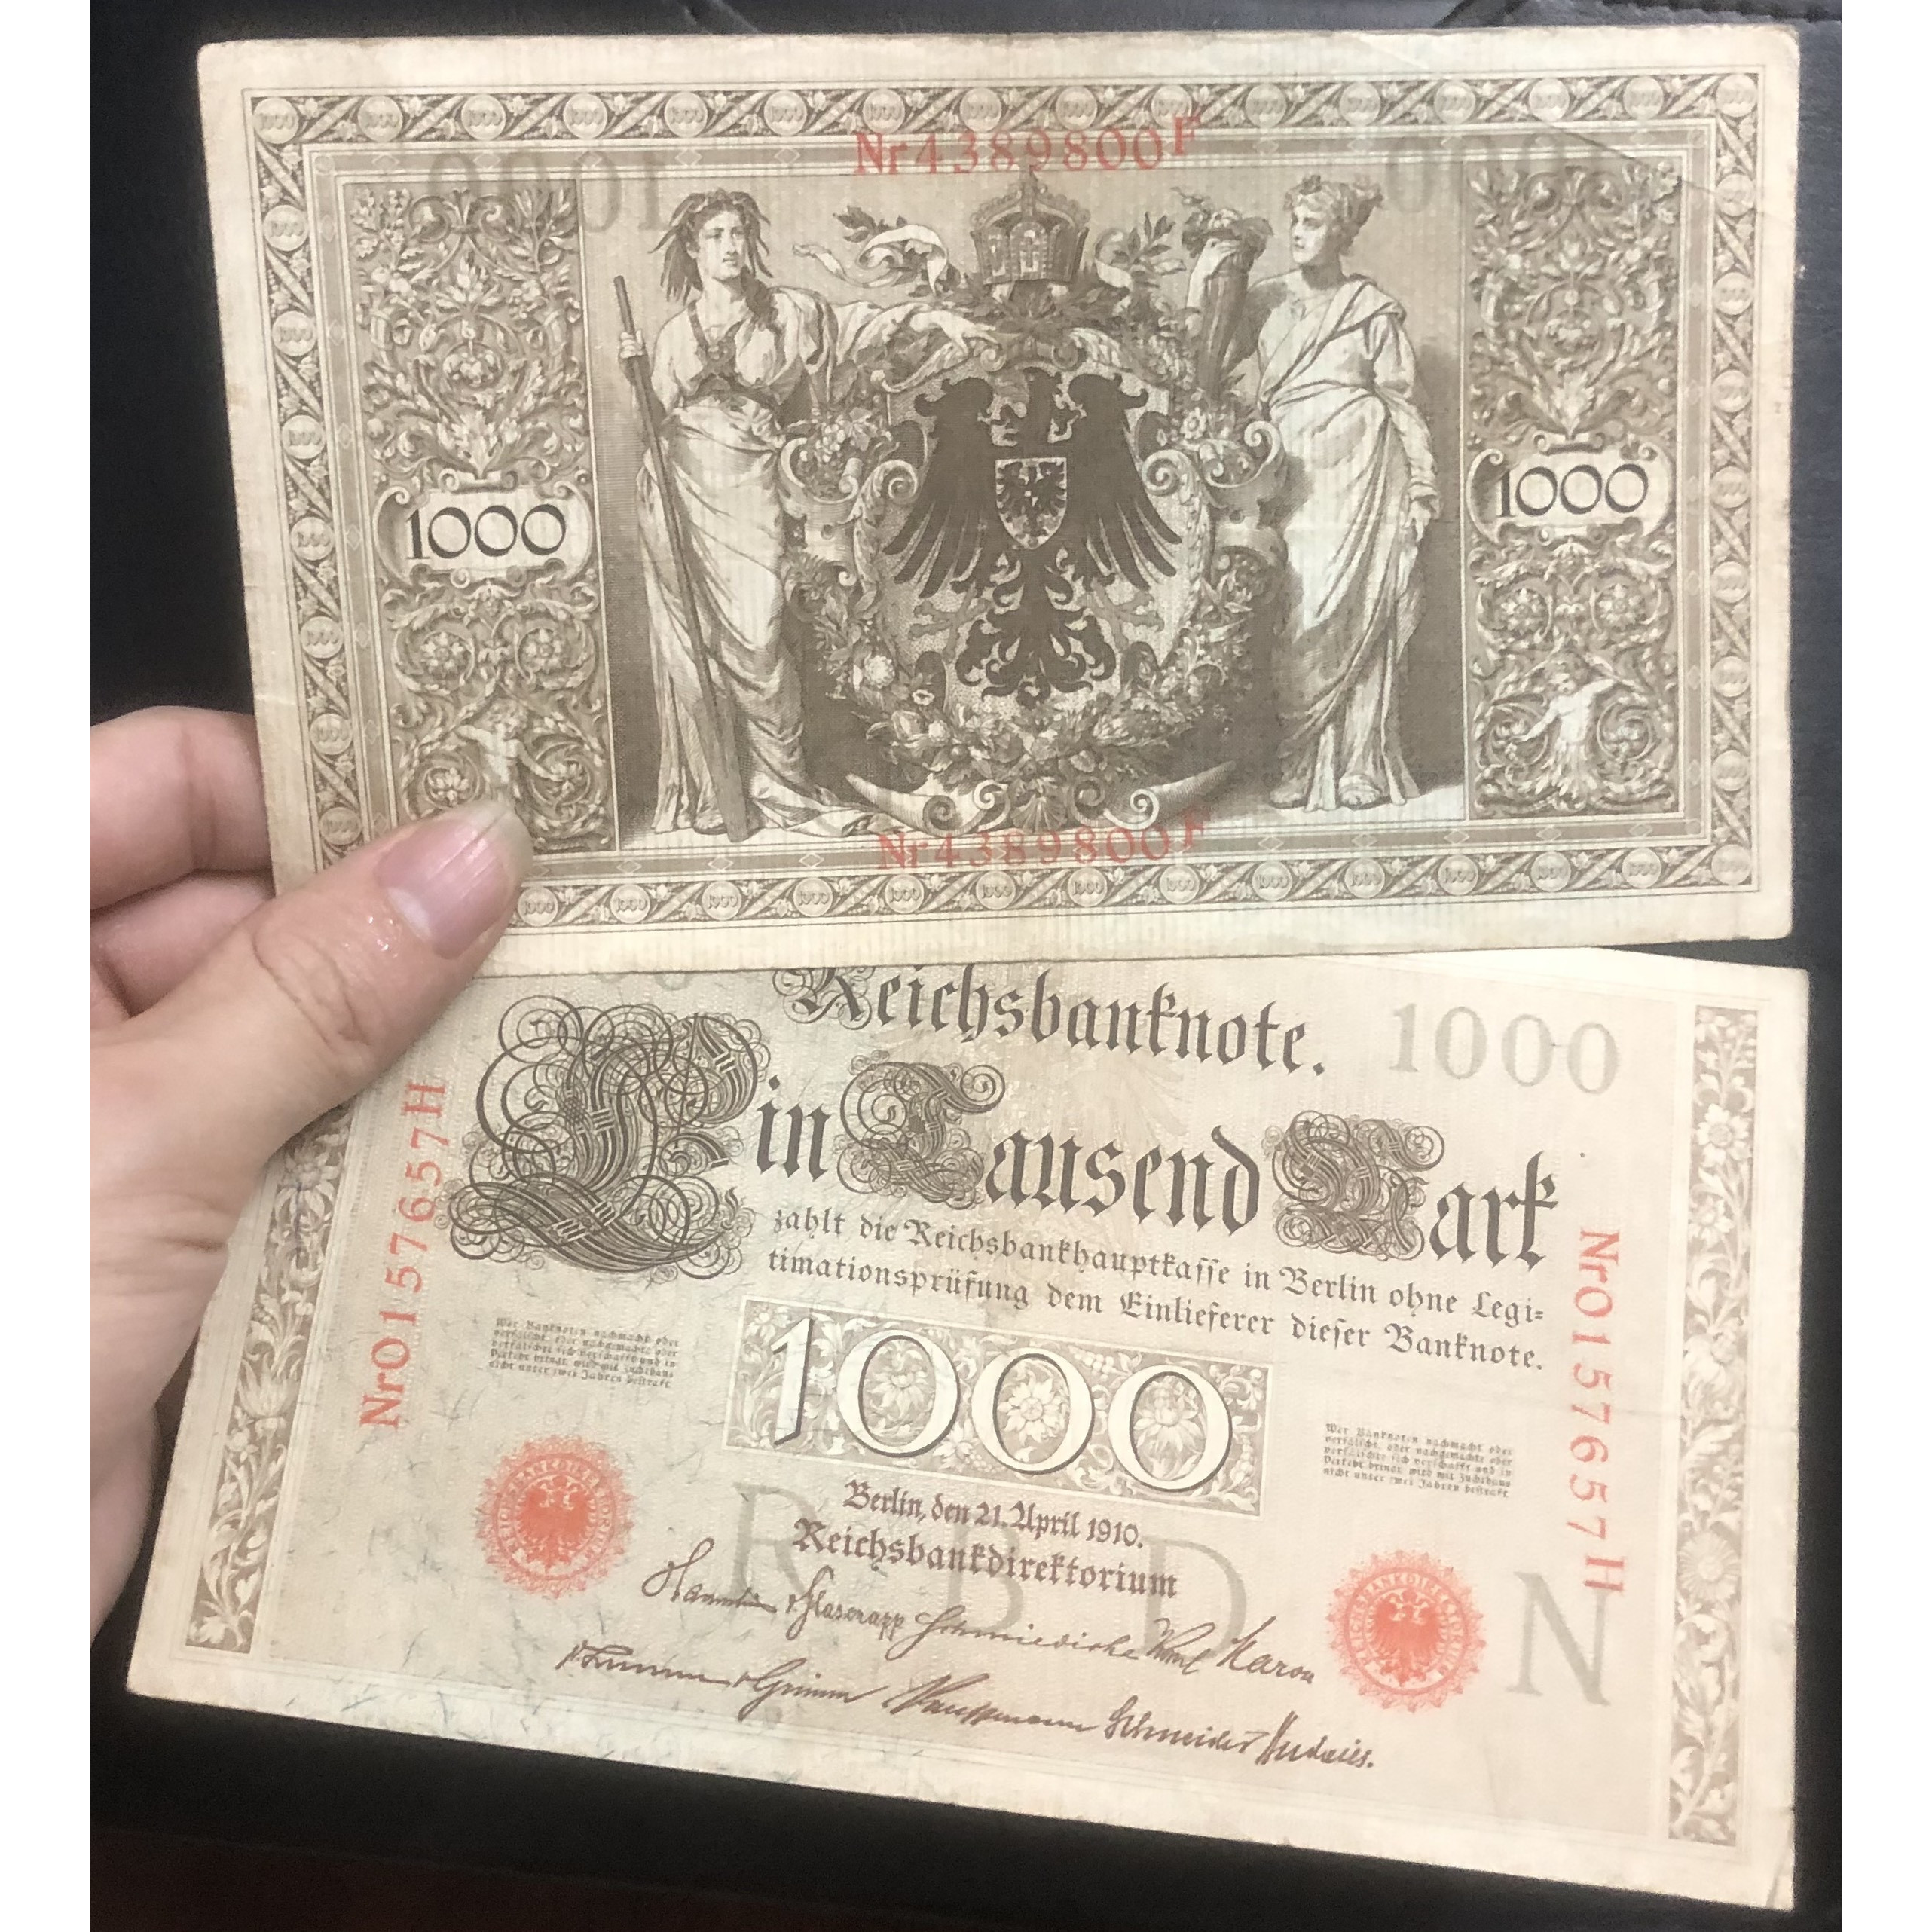 Tiền thế giới 1000 Mark Đức 1910, hơn 100 năm tuổi, khổ lớn sưu tầm